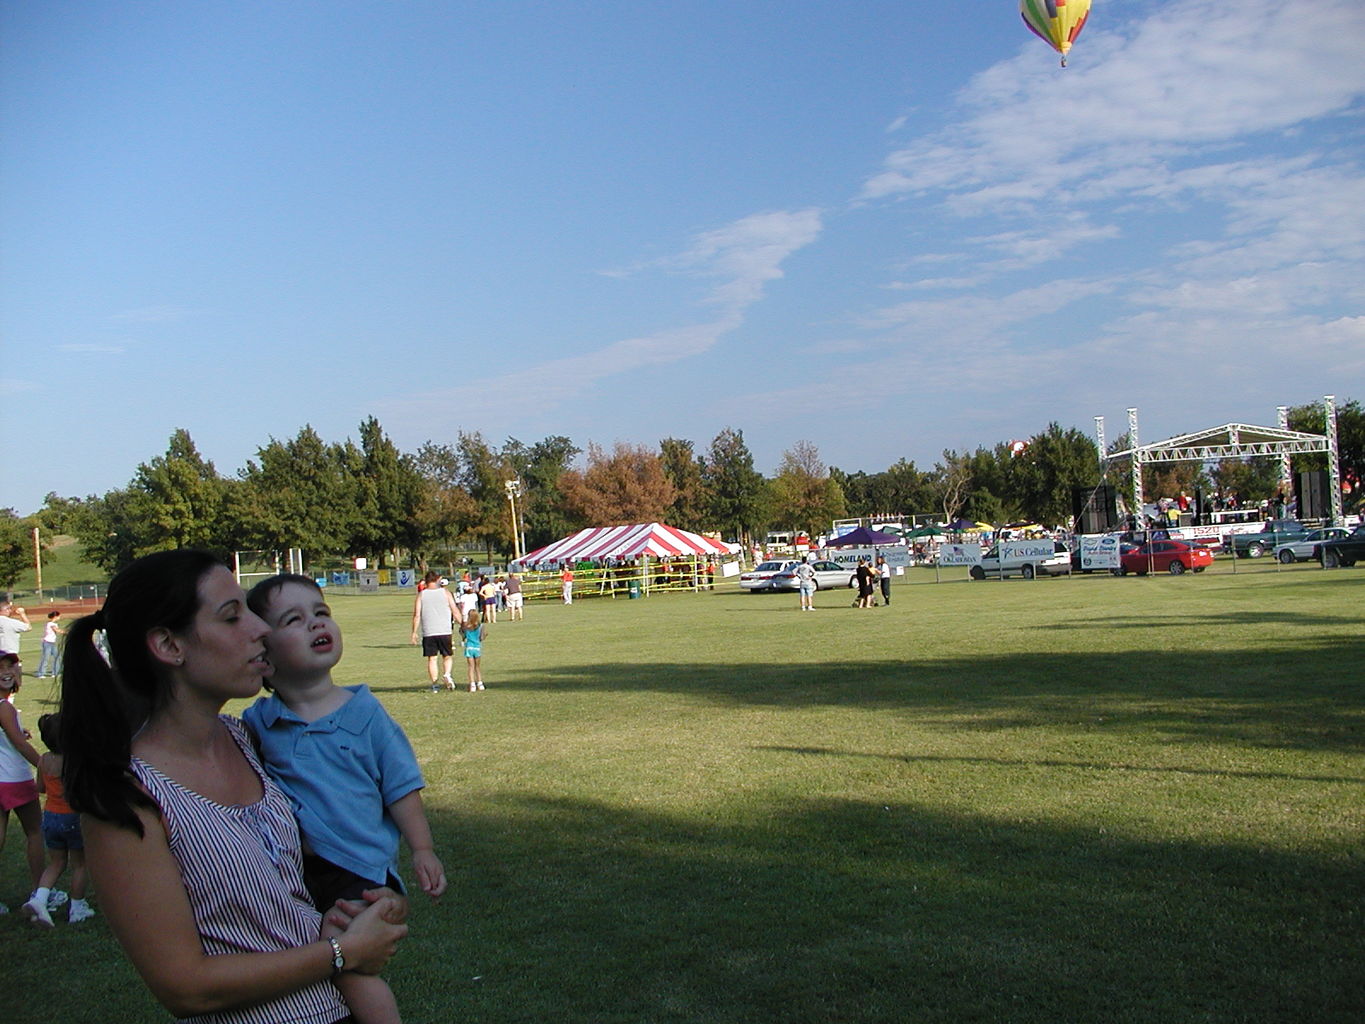 Balloon Fest 2004
